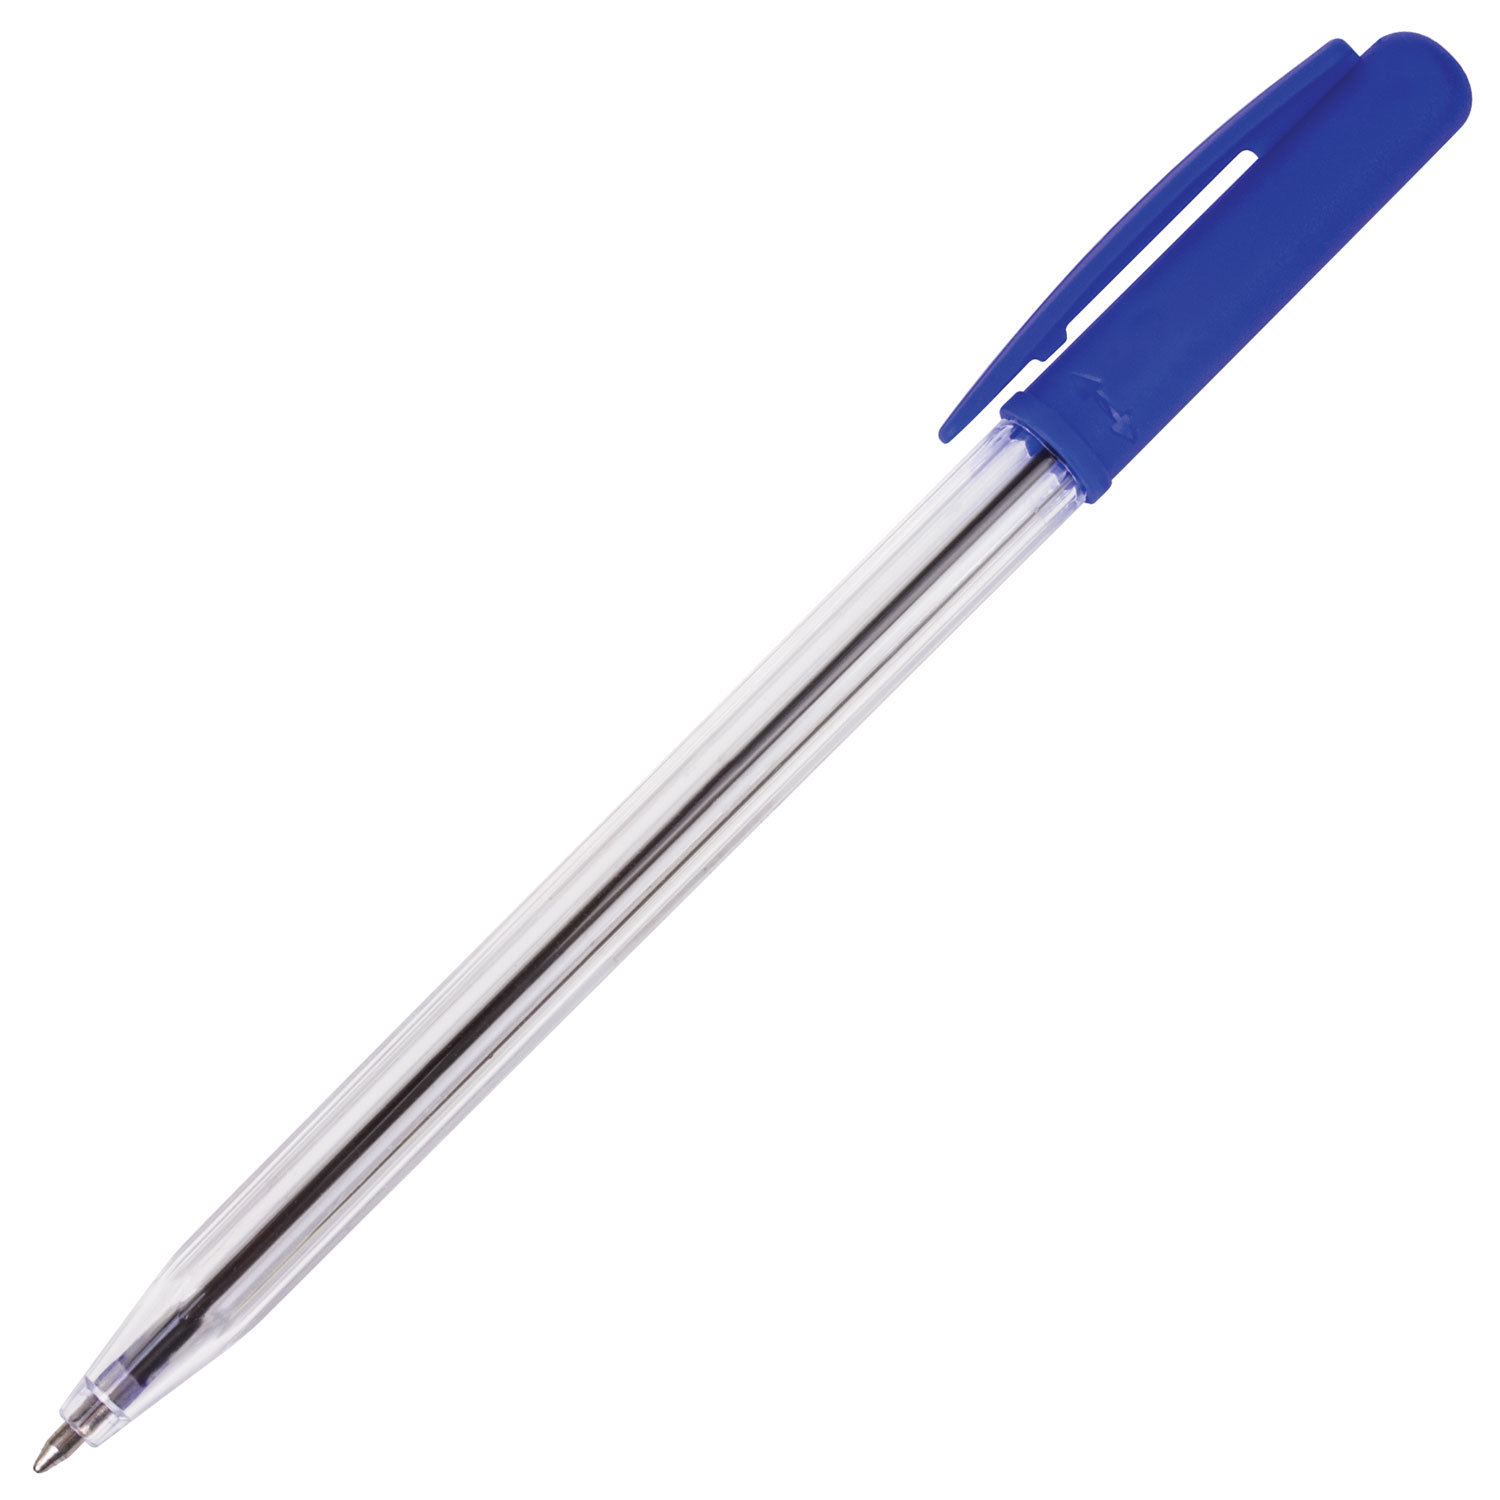 STAFF Ручка STAFF 141673, комплект 100 шт.